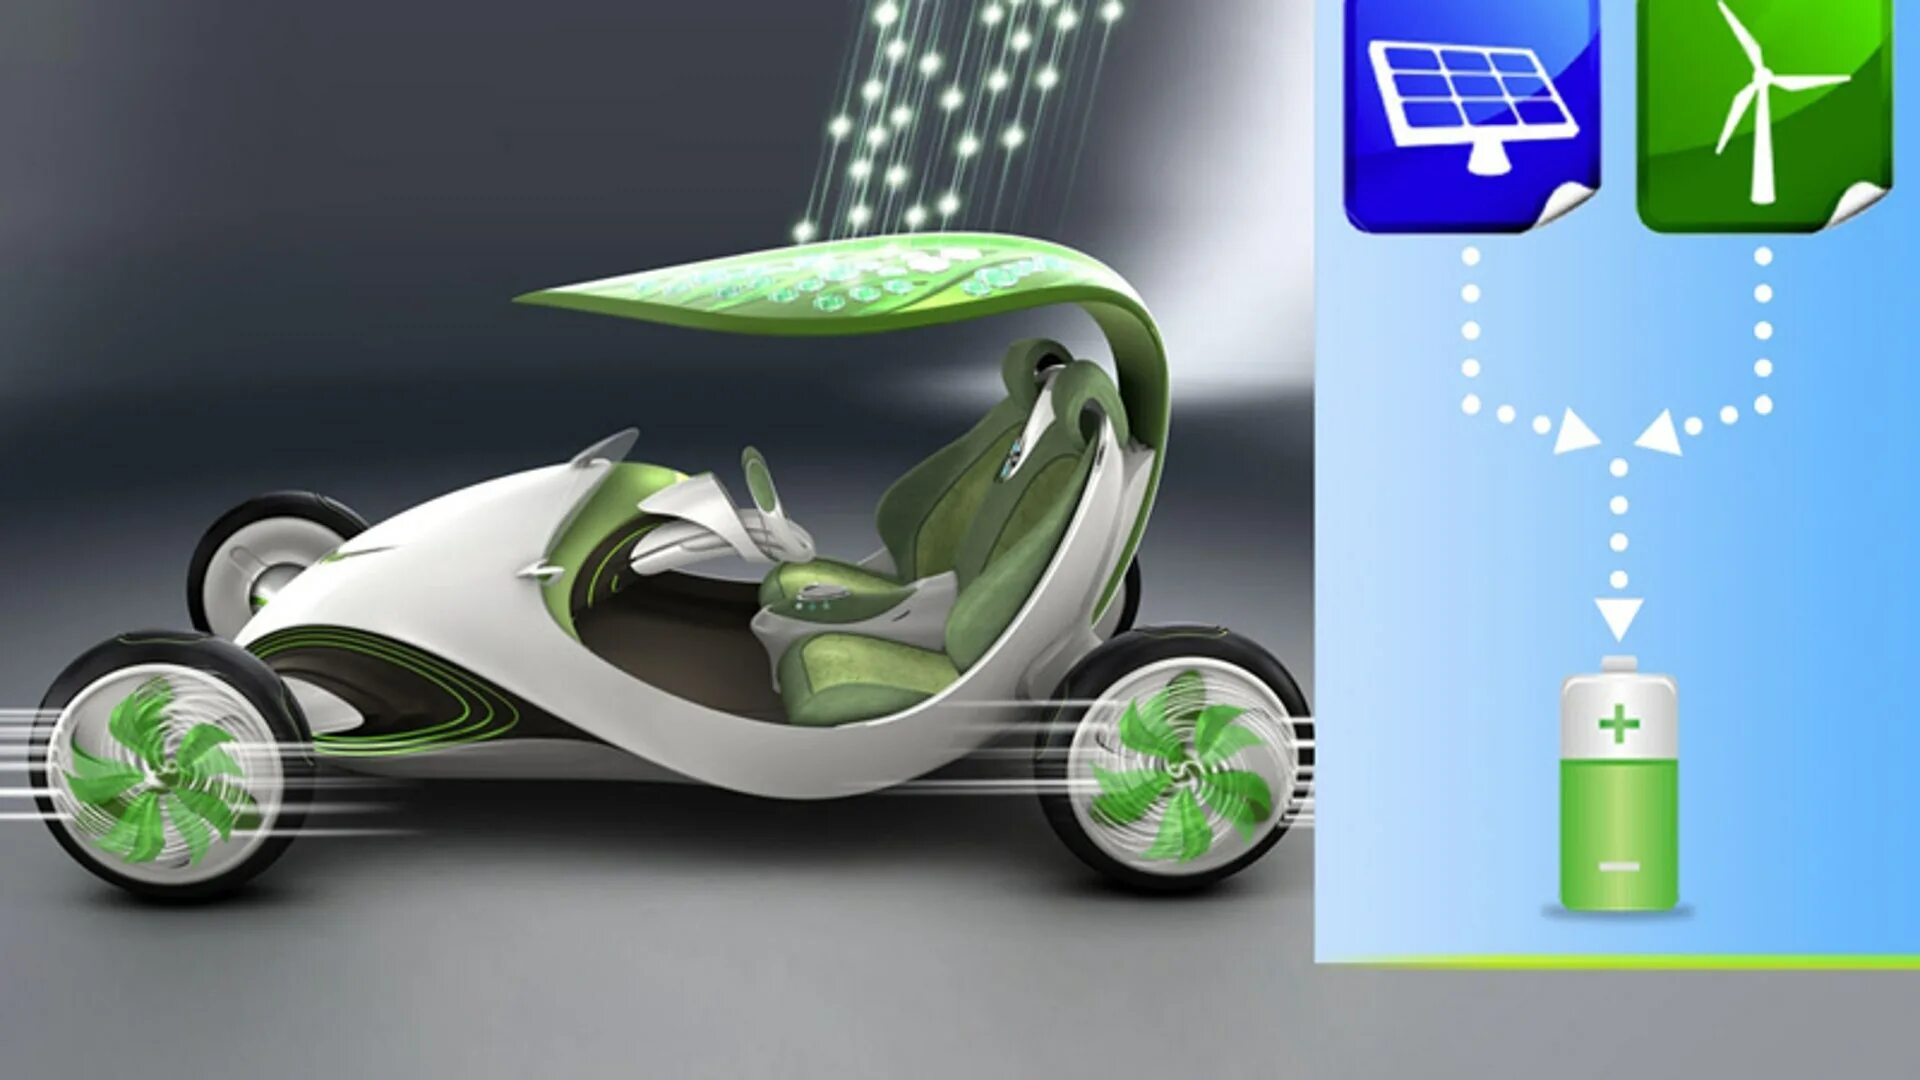 Средство будущее. Экологичный автомобиль будущего. Экомобиль будущего Тесла. Экологические технологии Hyundai. Детский проект машина будущего з\экологически чистая.